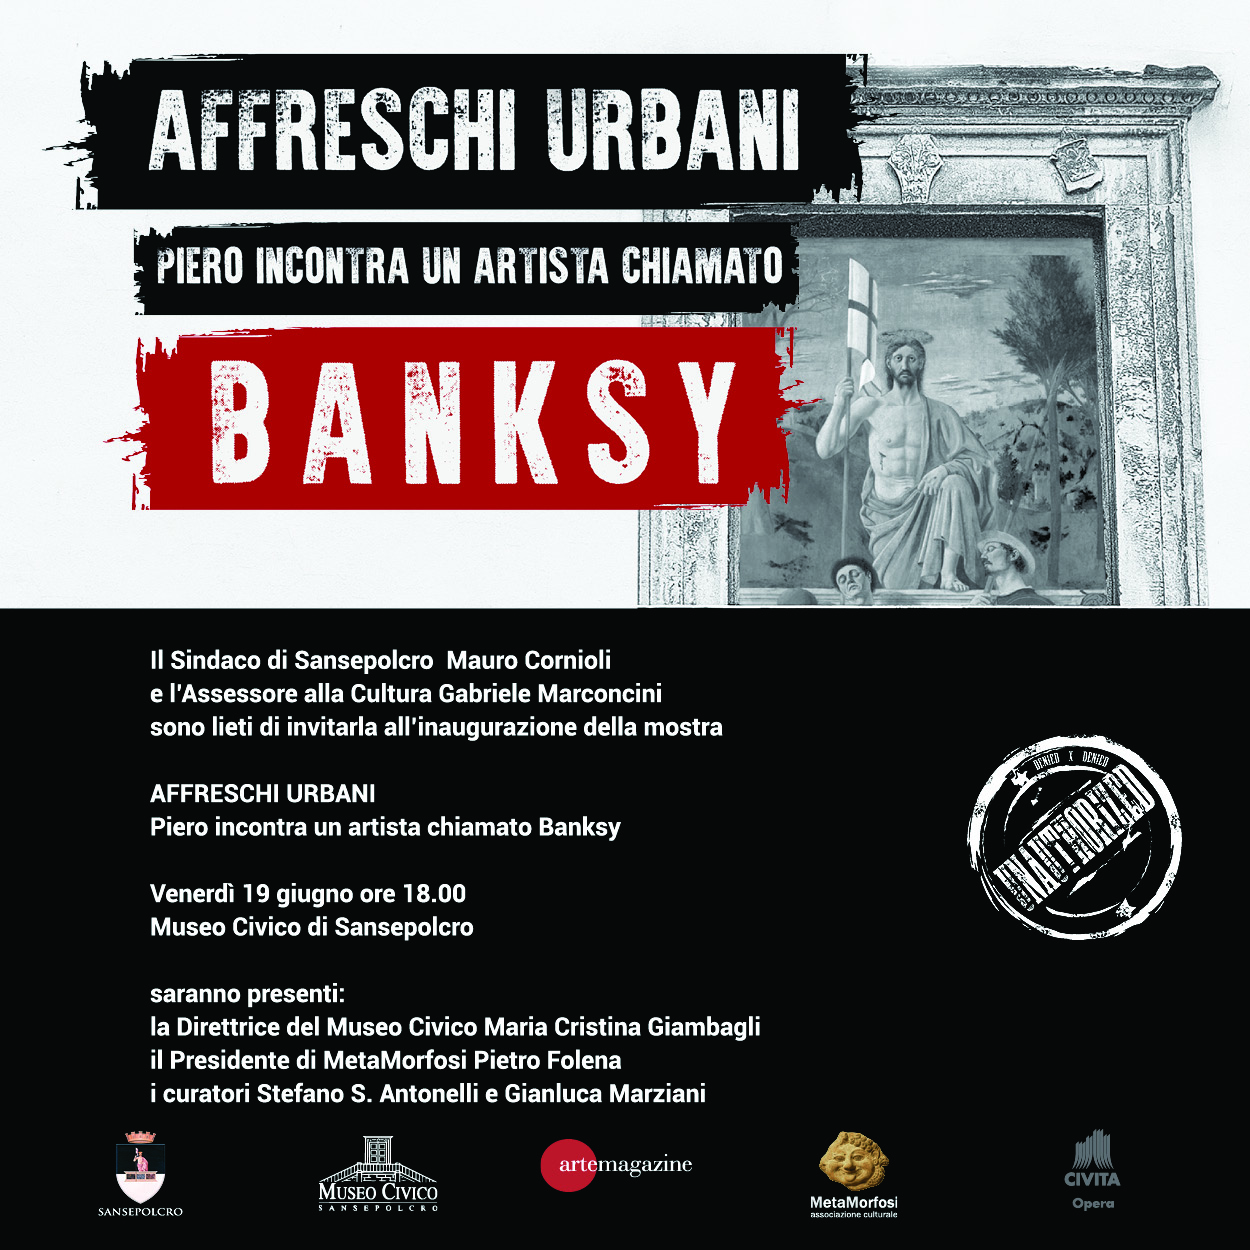 Museo Civico di Sansepolcro, sarà inaugurata venerdì 19 giugno la mostra “AFFRESCHI URBANI. PIERO incontra un artista chiamato BANKSY”